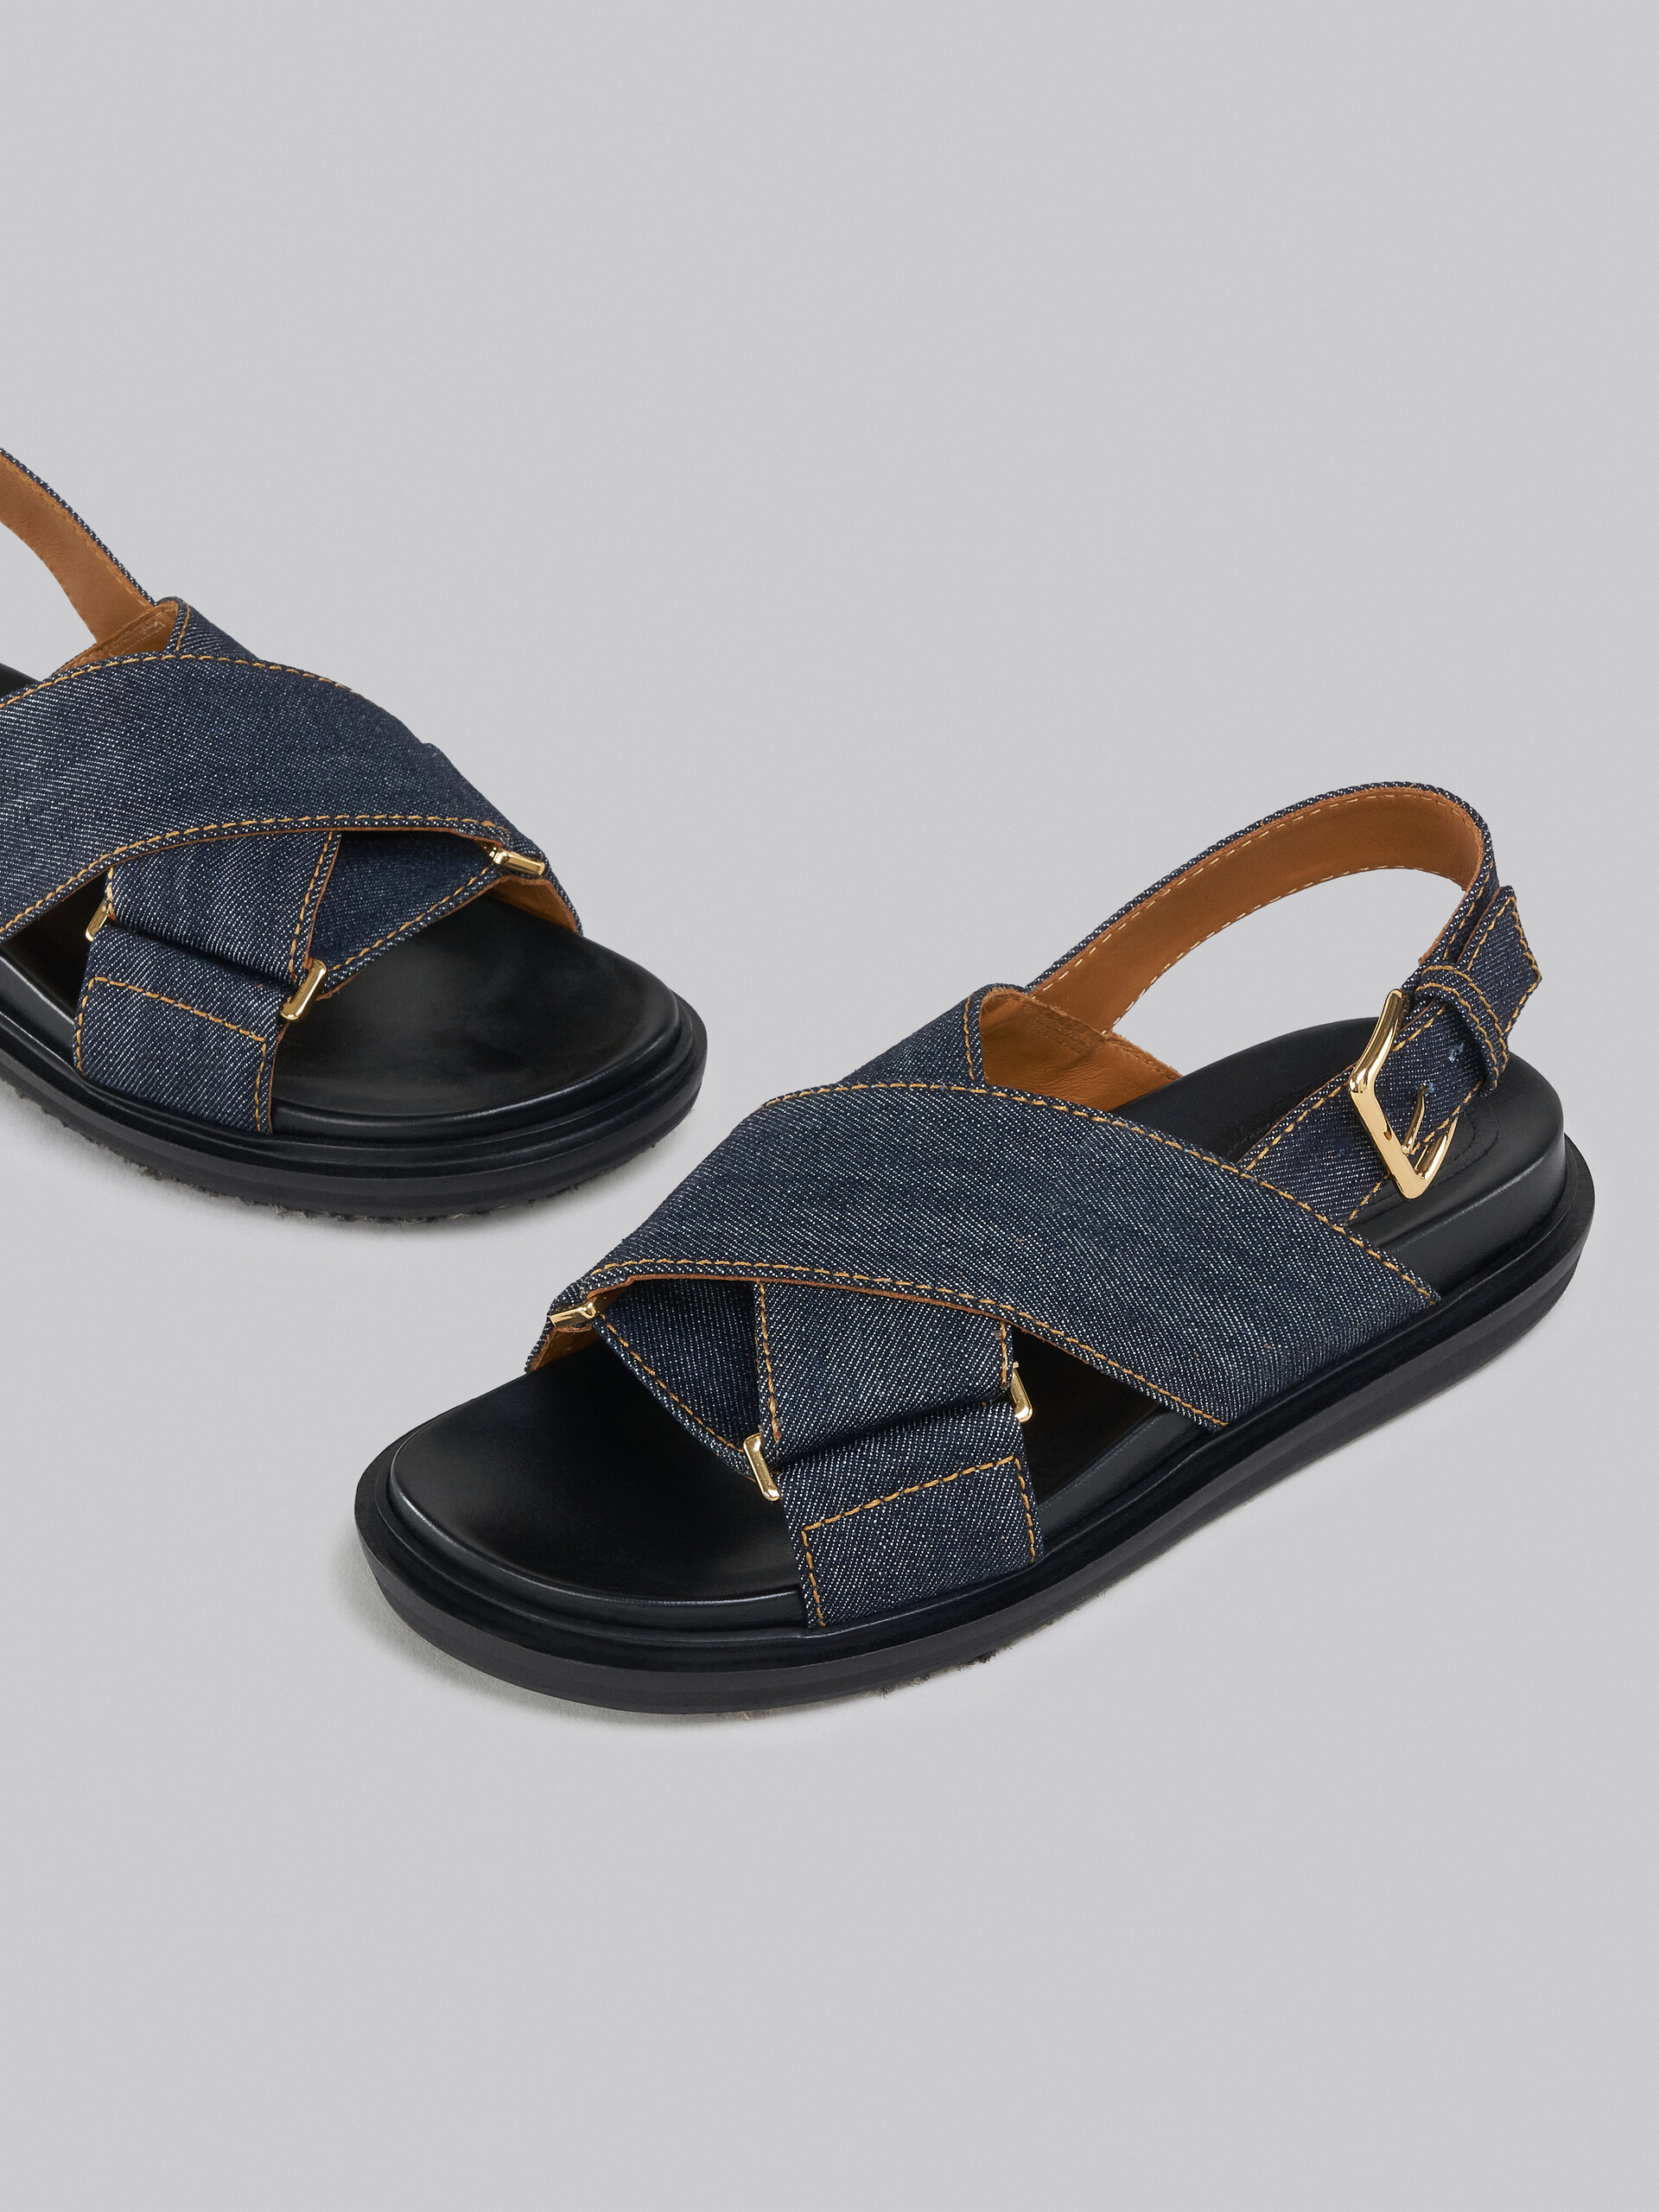 Sandalo incrociato in denim blu - Sandali - Image 5